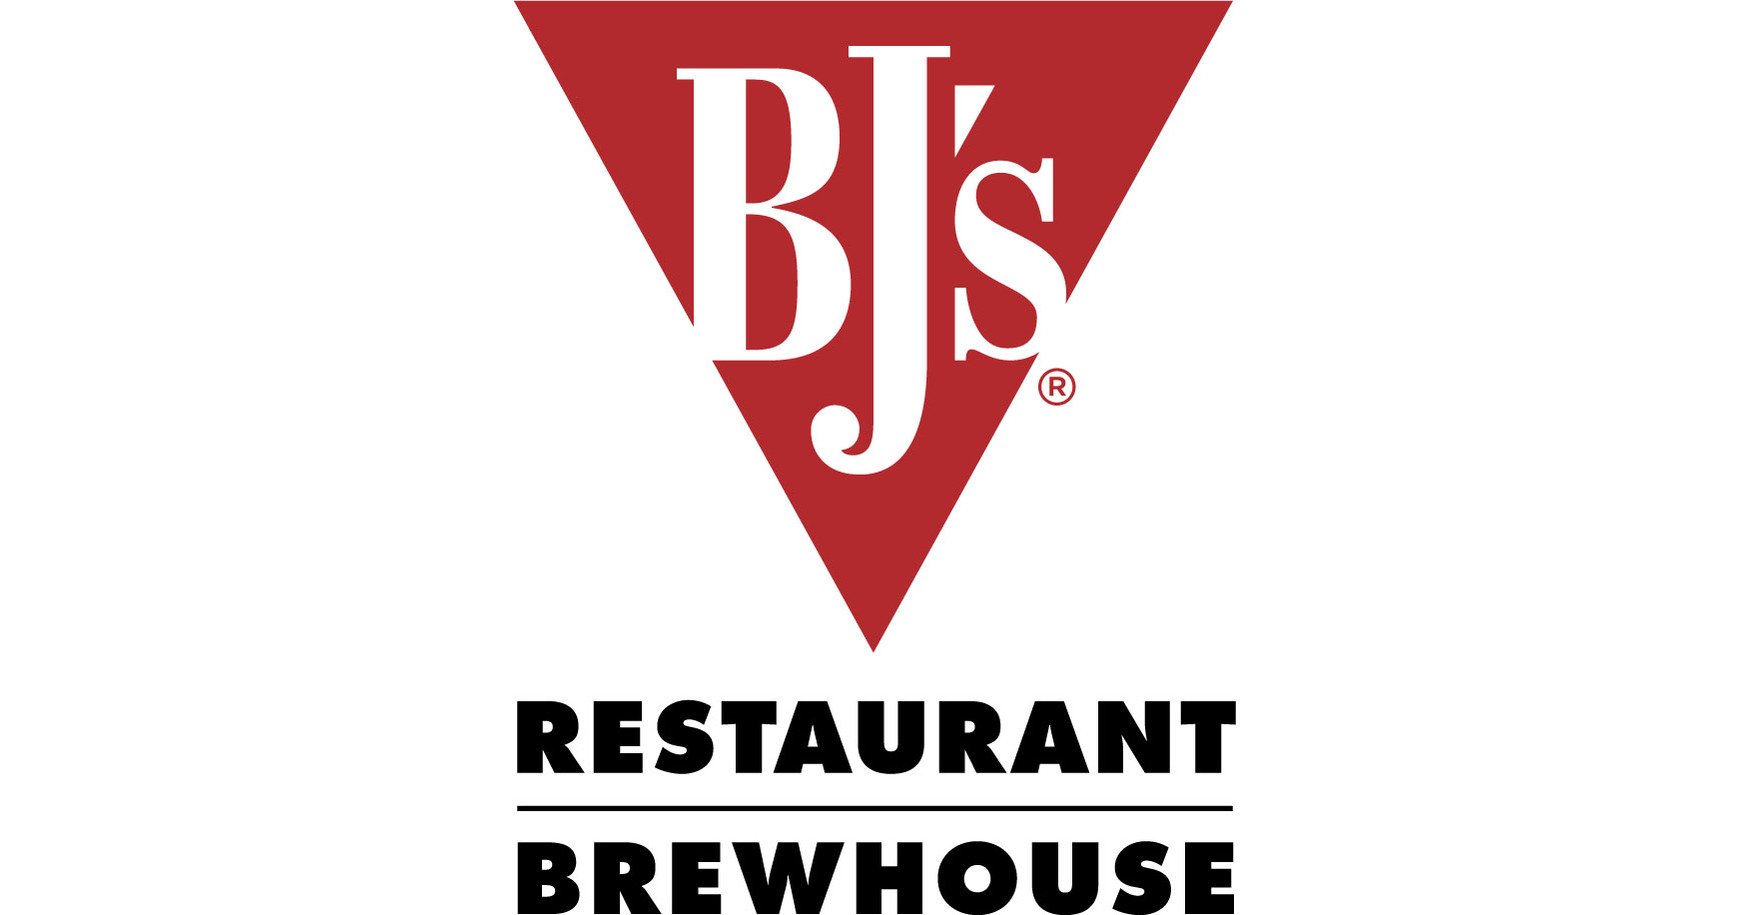 BJs_Restaurants_Inc_Logo.jpg